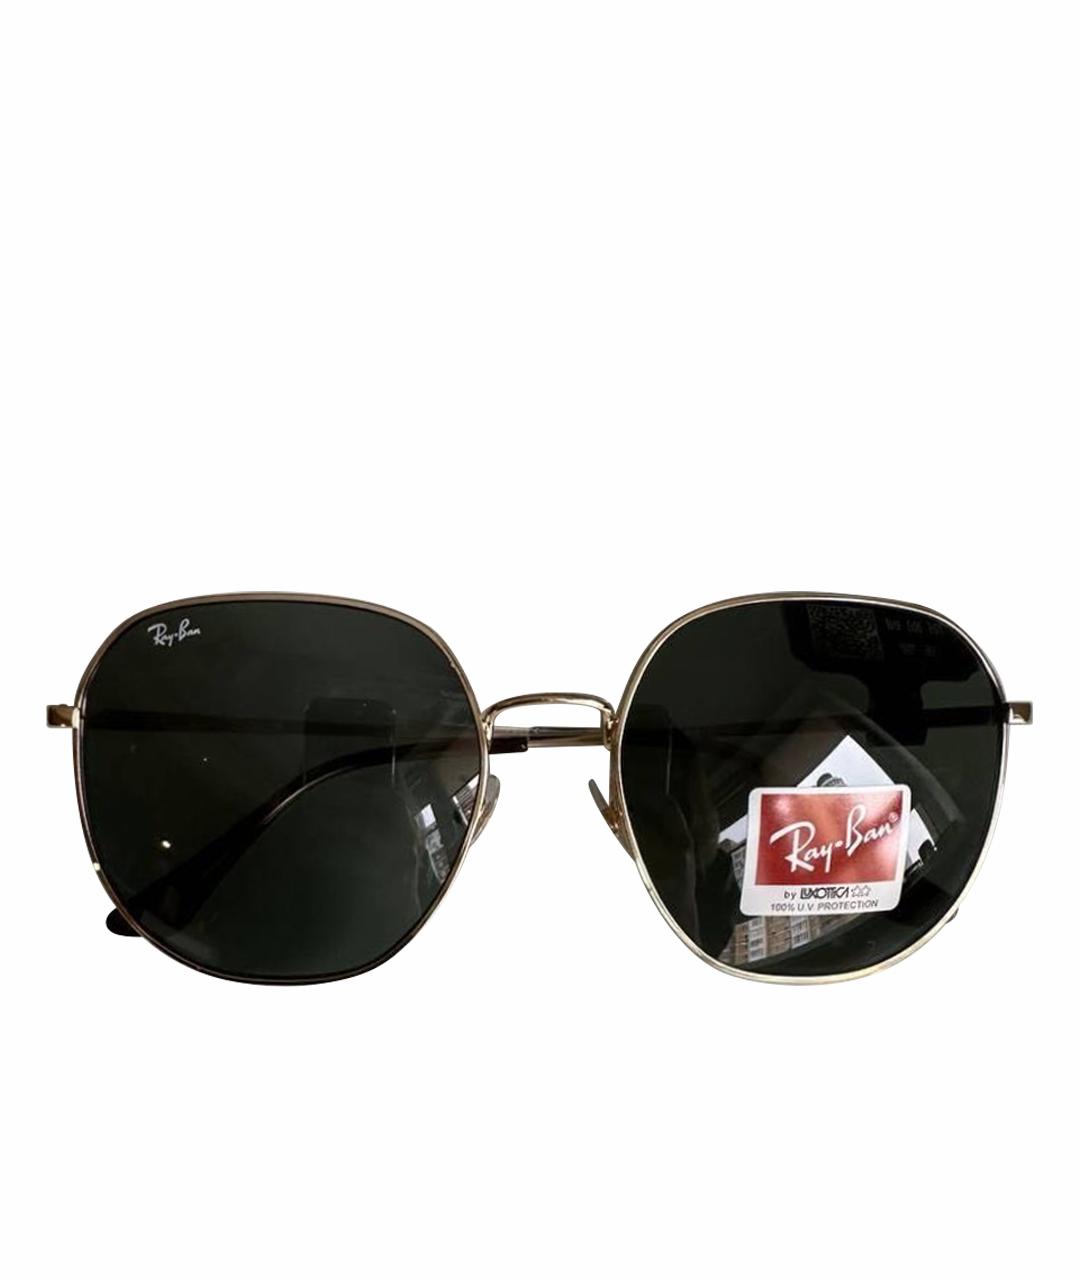 RAY BAN Золотые металлические солнцезащитные очки, фото 1